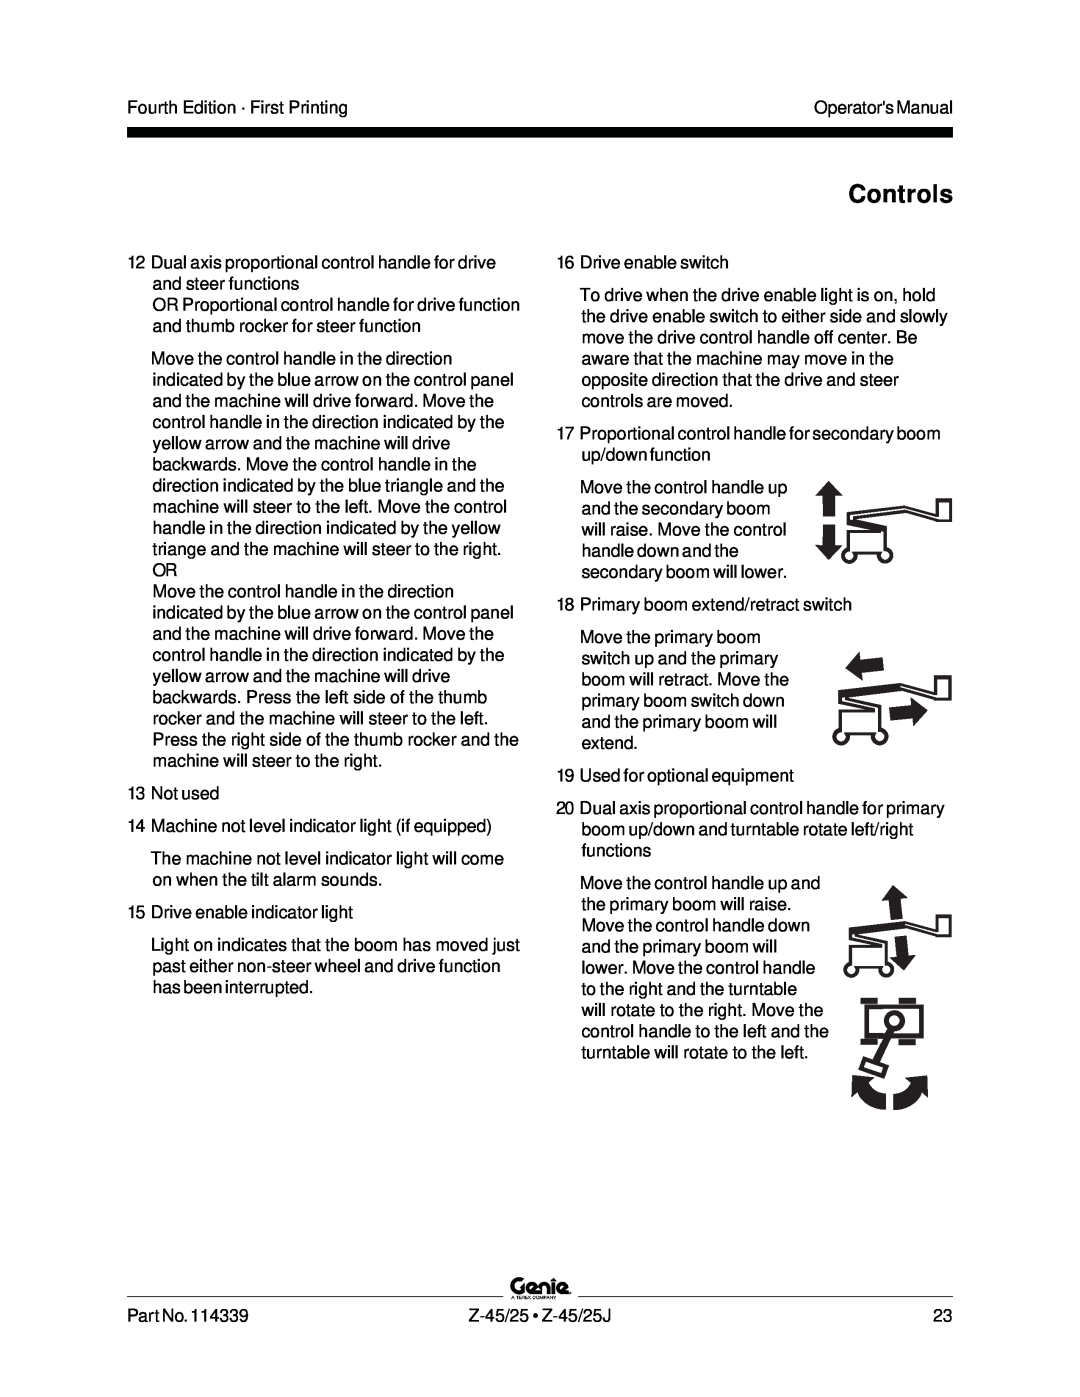 Genie Z-45, Z-25J manual Controls, Fourth Edition · First Printing 